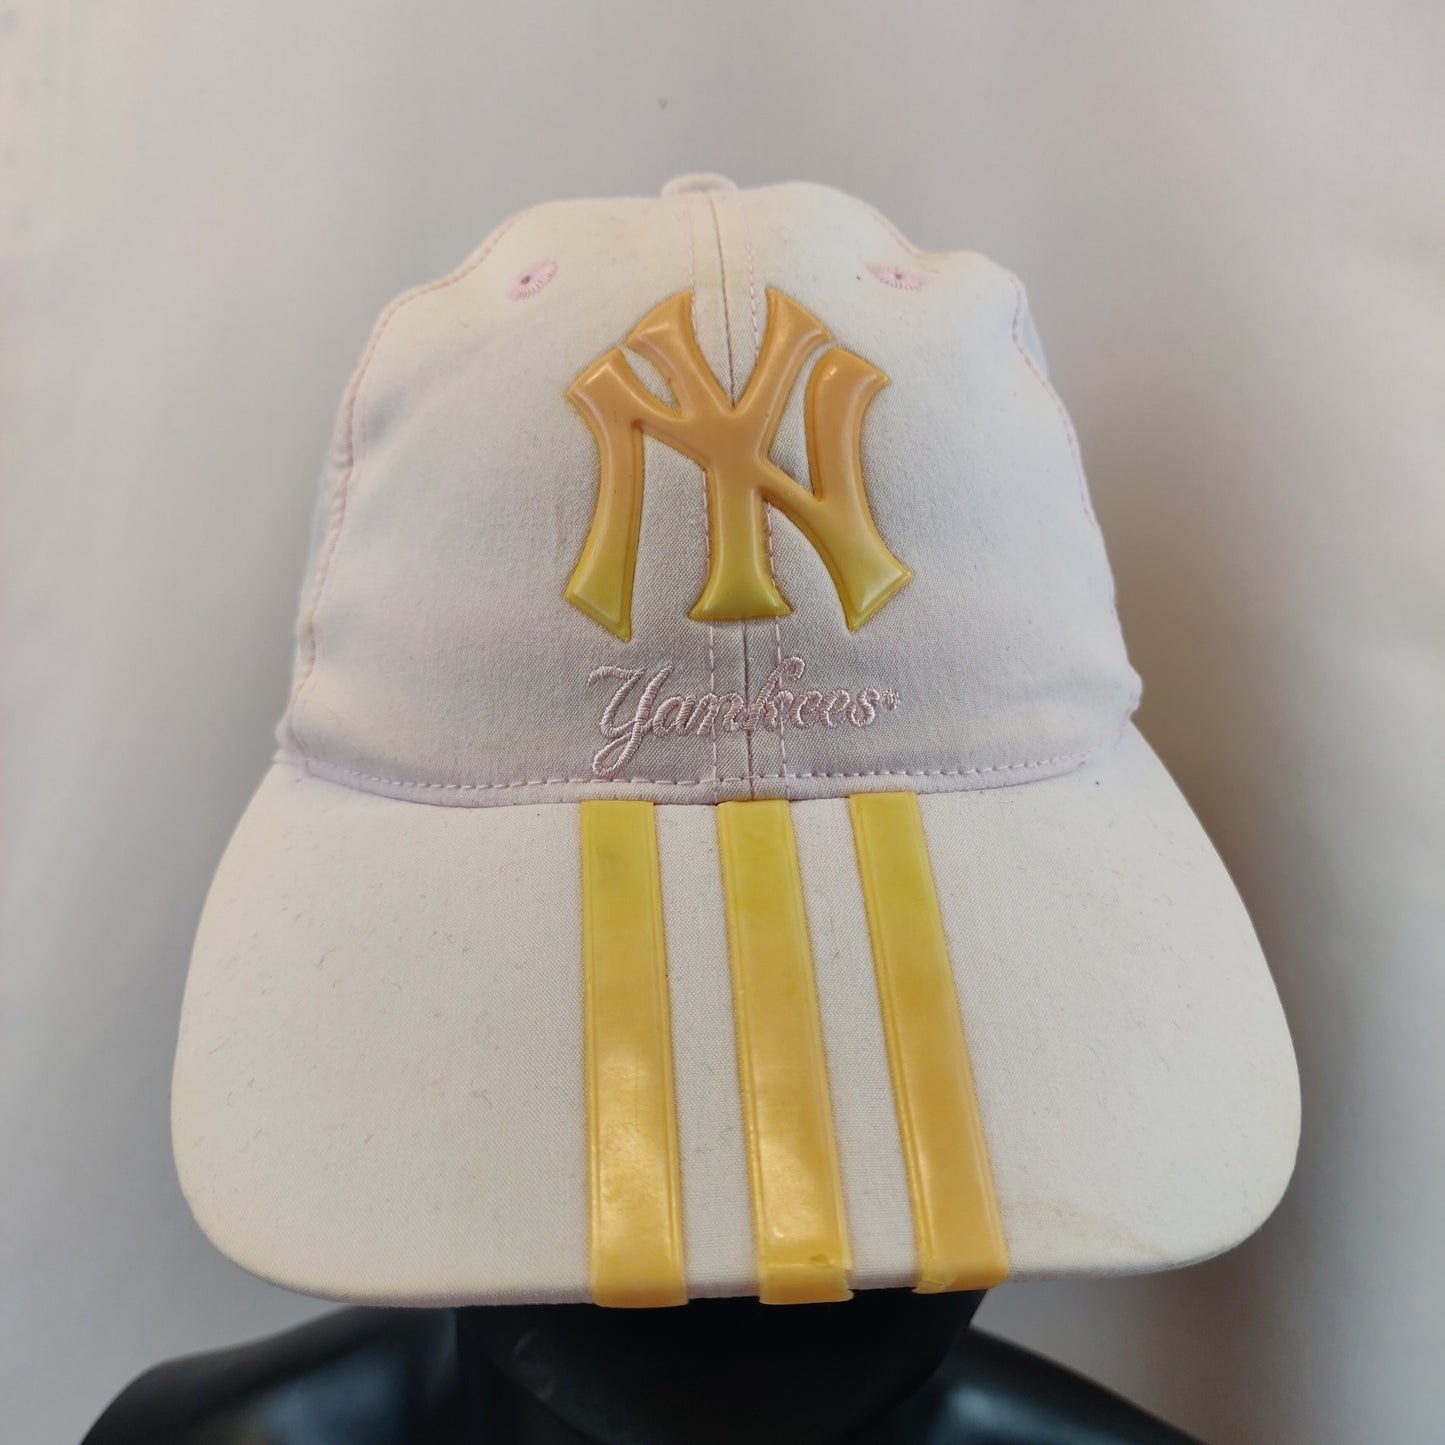 Adidas x NY New York Yankees White Yellow Pink Baseball Cap Hat Women